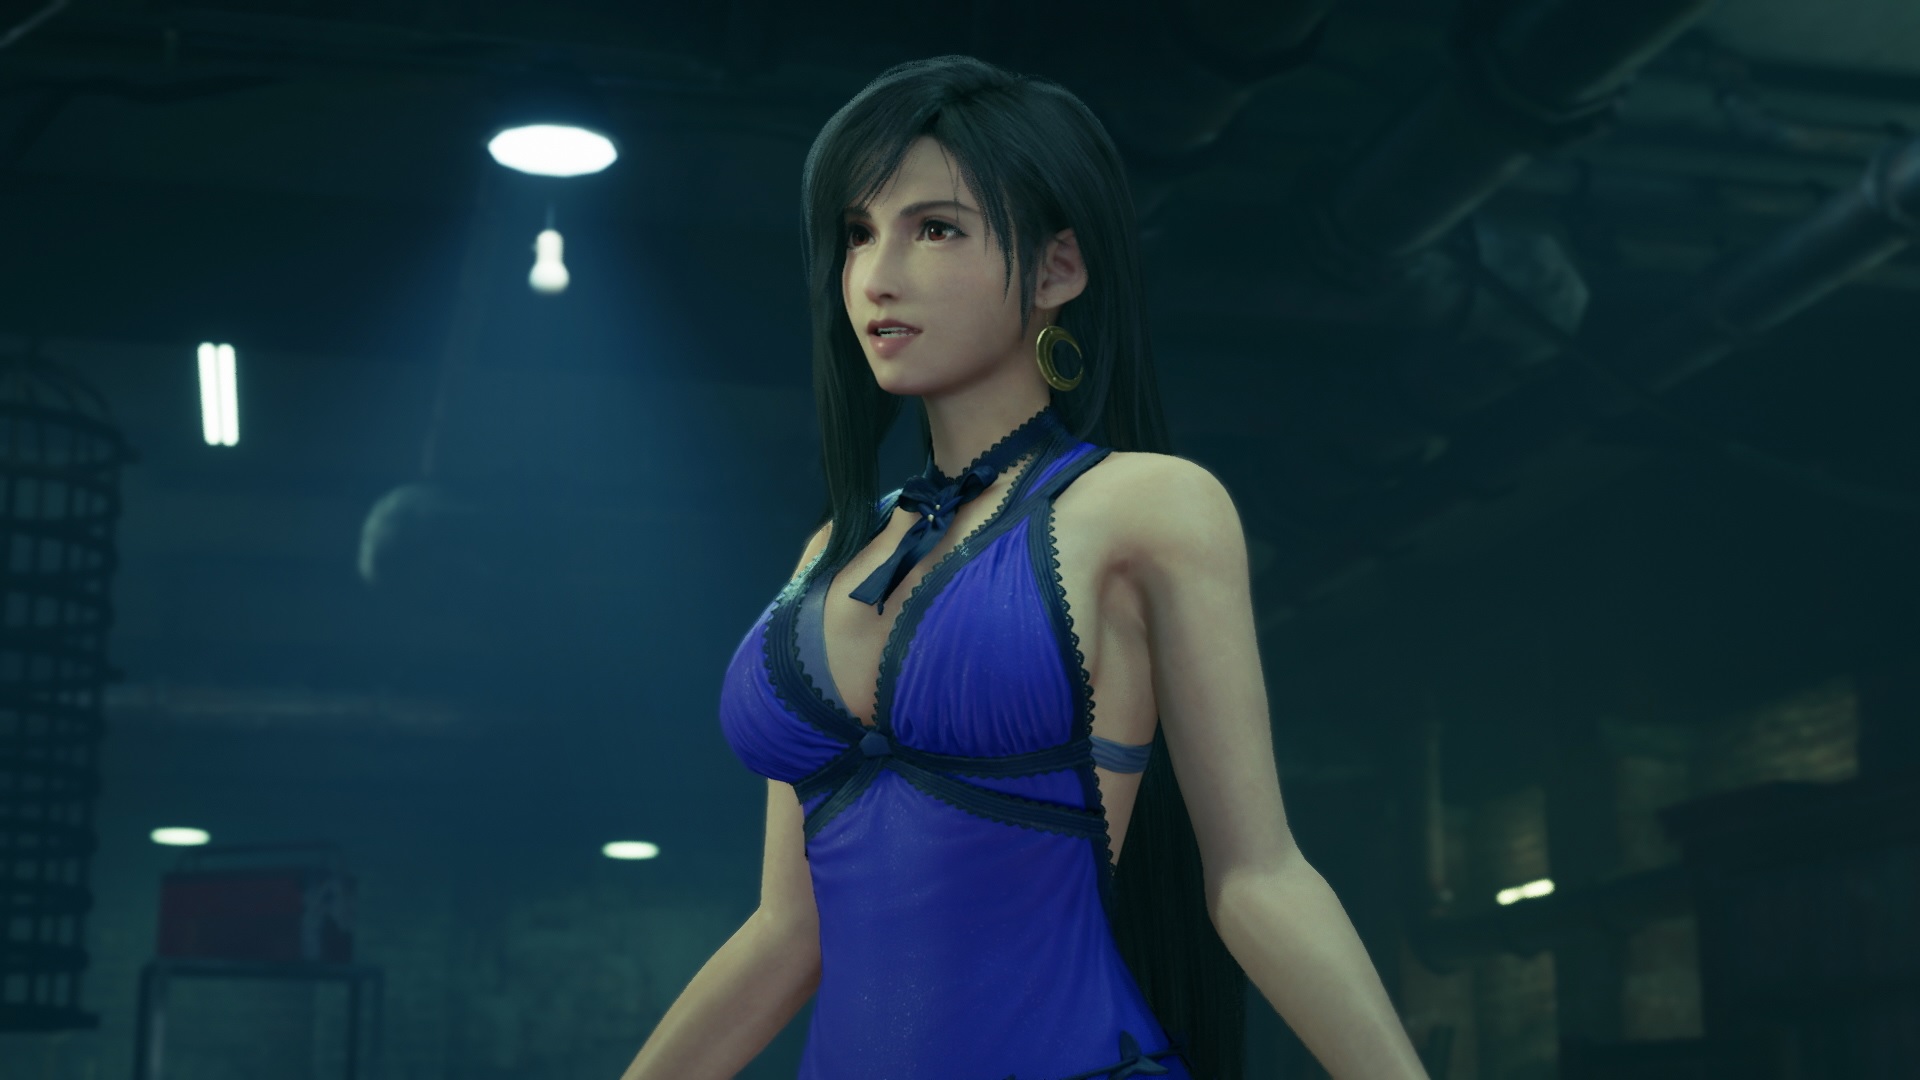 Final Fantasy 7 Remake Tifa Lockhart mod released for JRPG Edge of